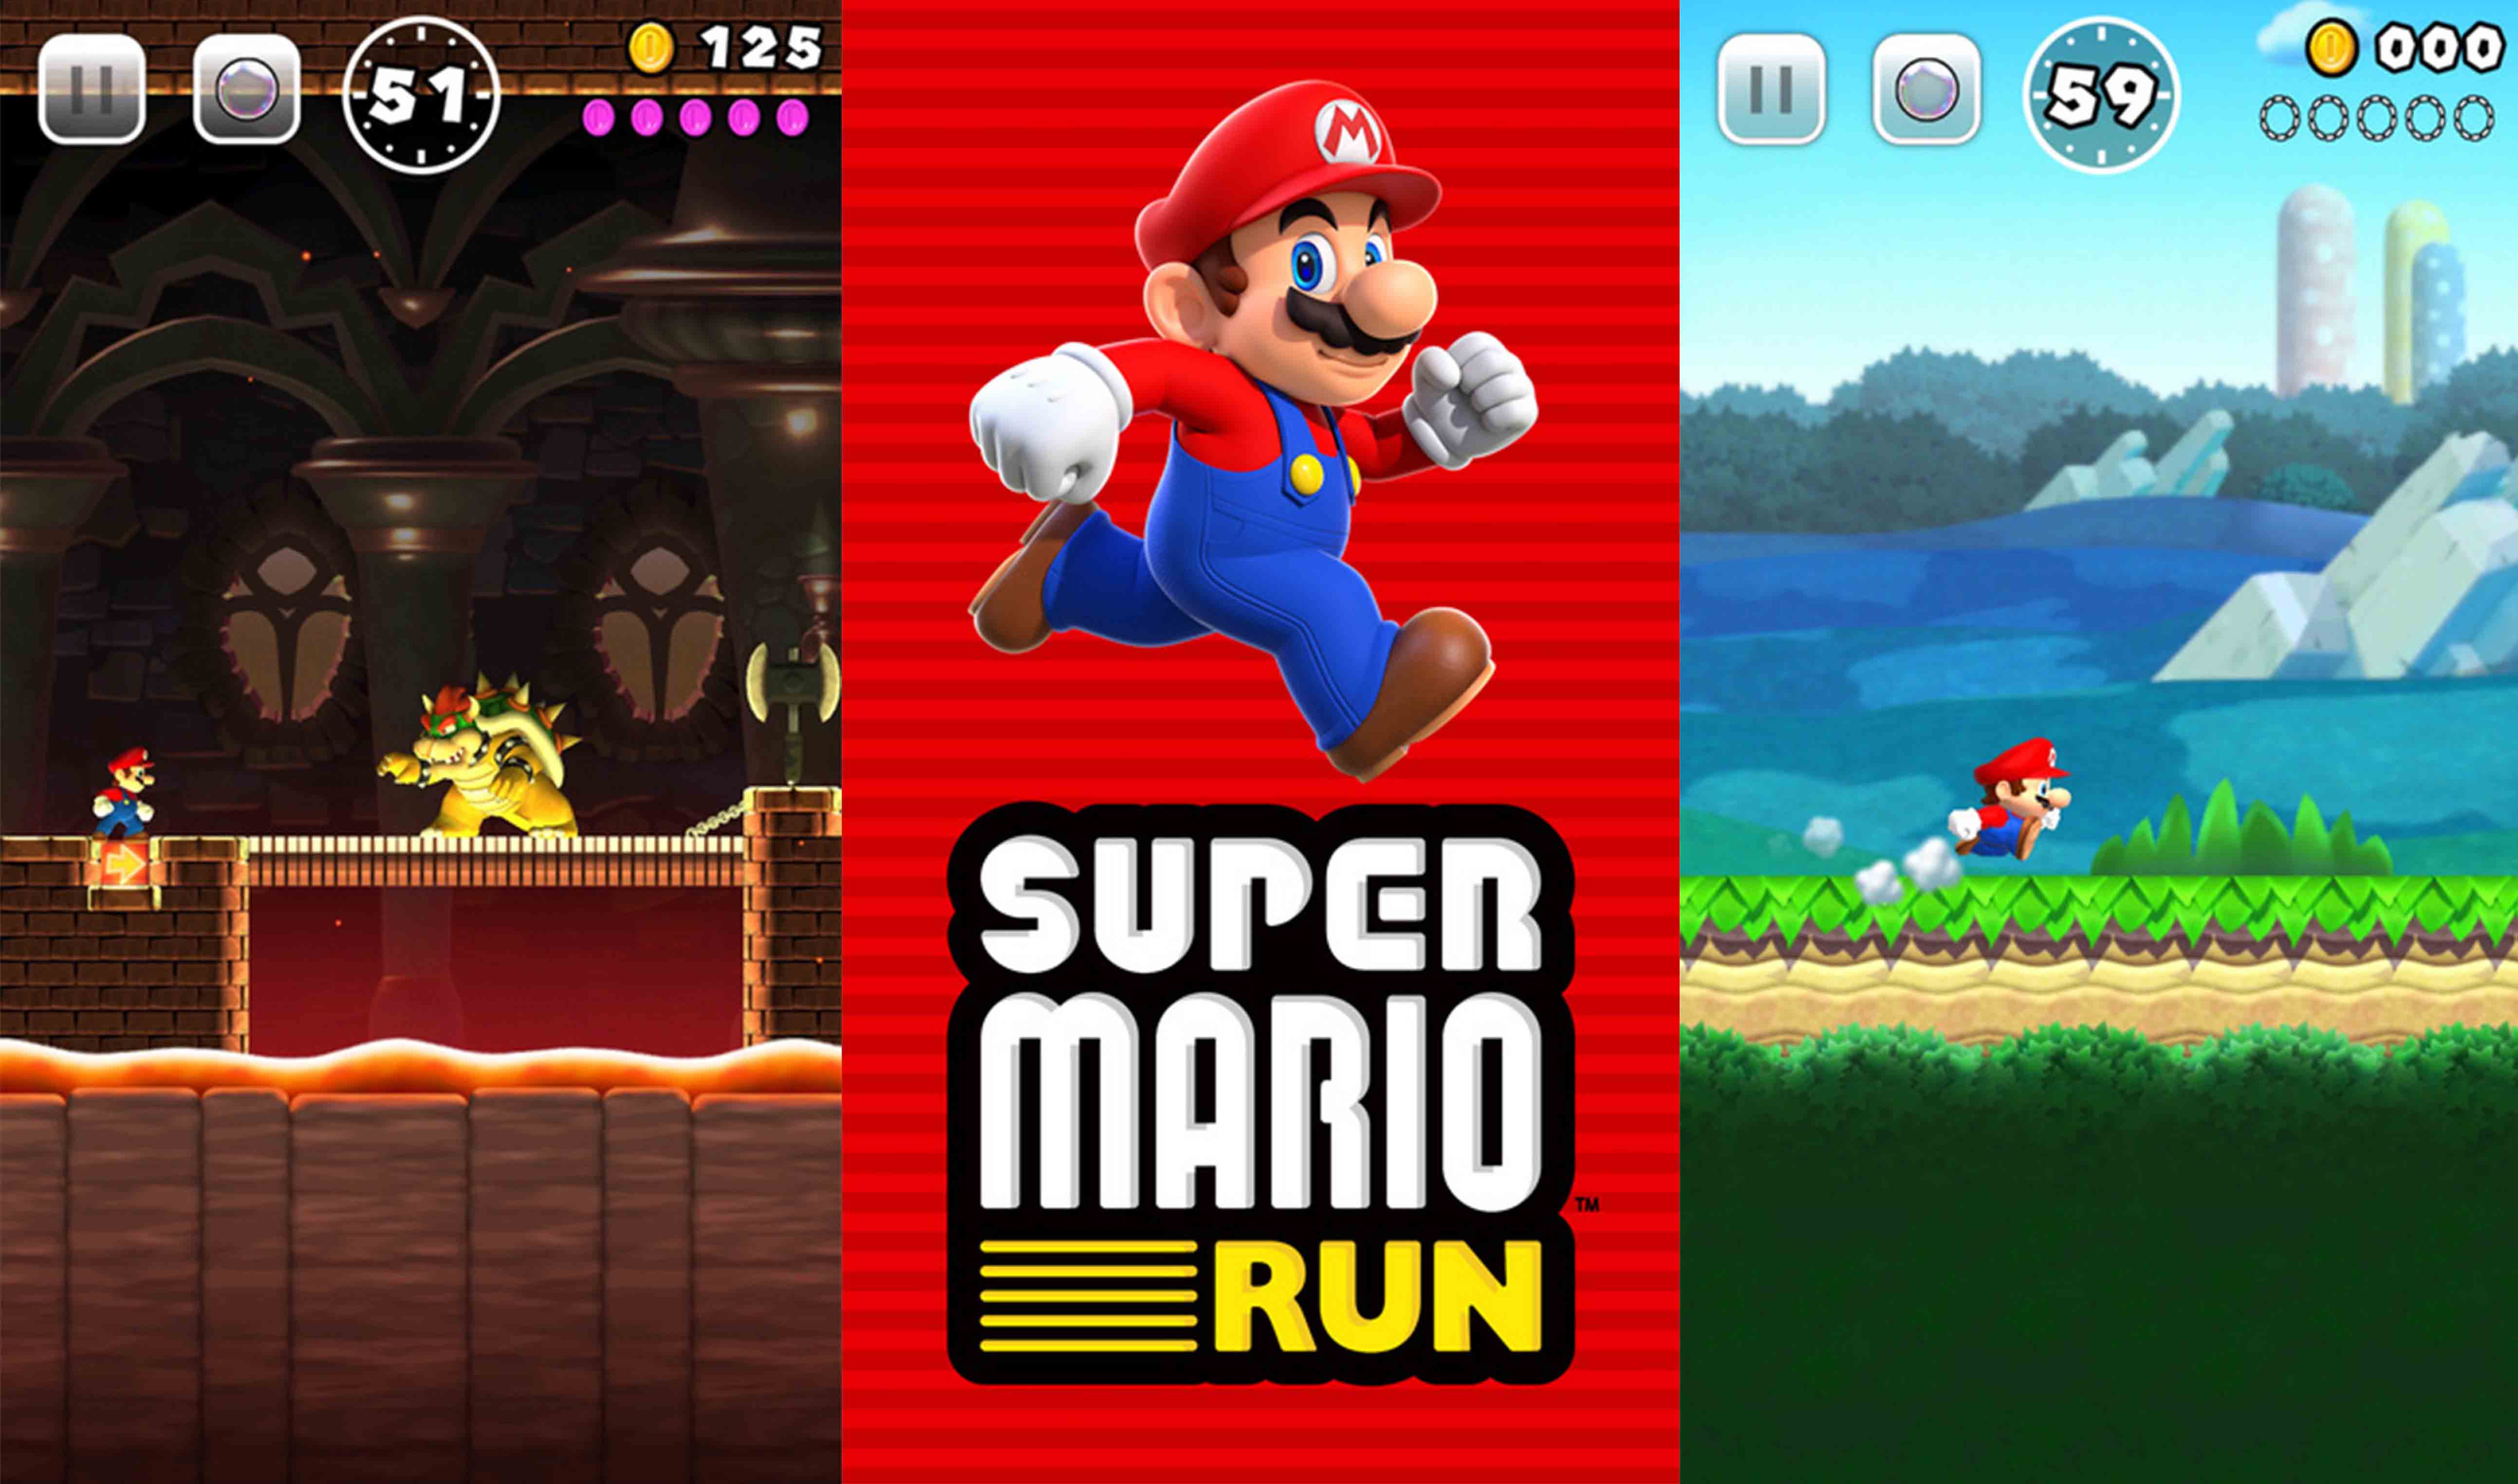 Super Mario Run foi lançado no iPhone e iPad, mas dever chegar aos aparelhos Android no futuro.